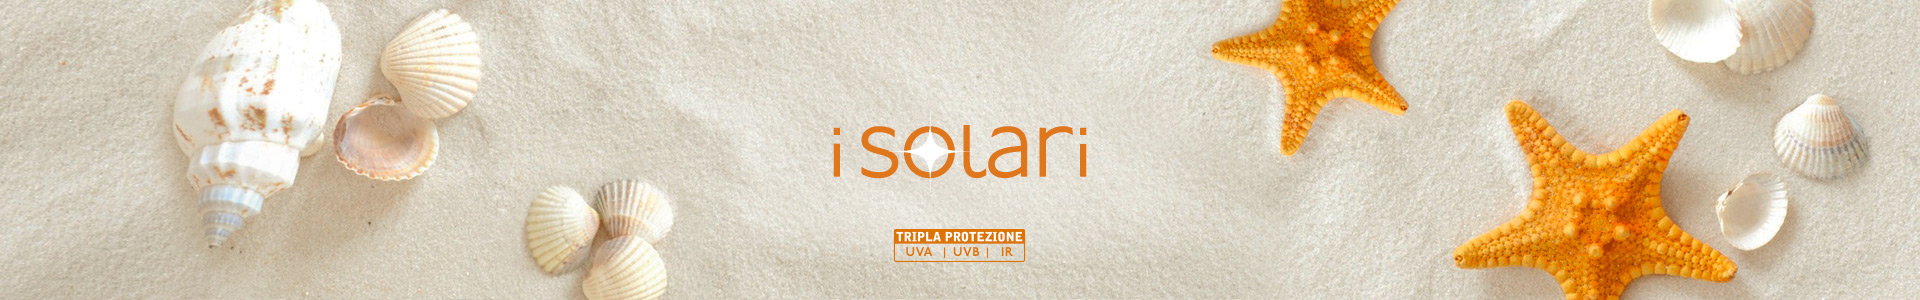 Solari-1920x300-080321.jpg